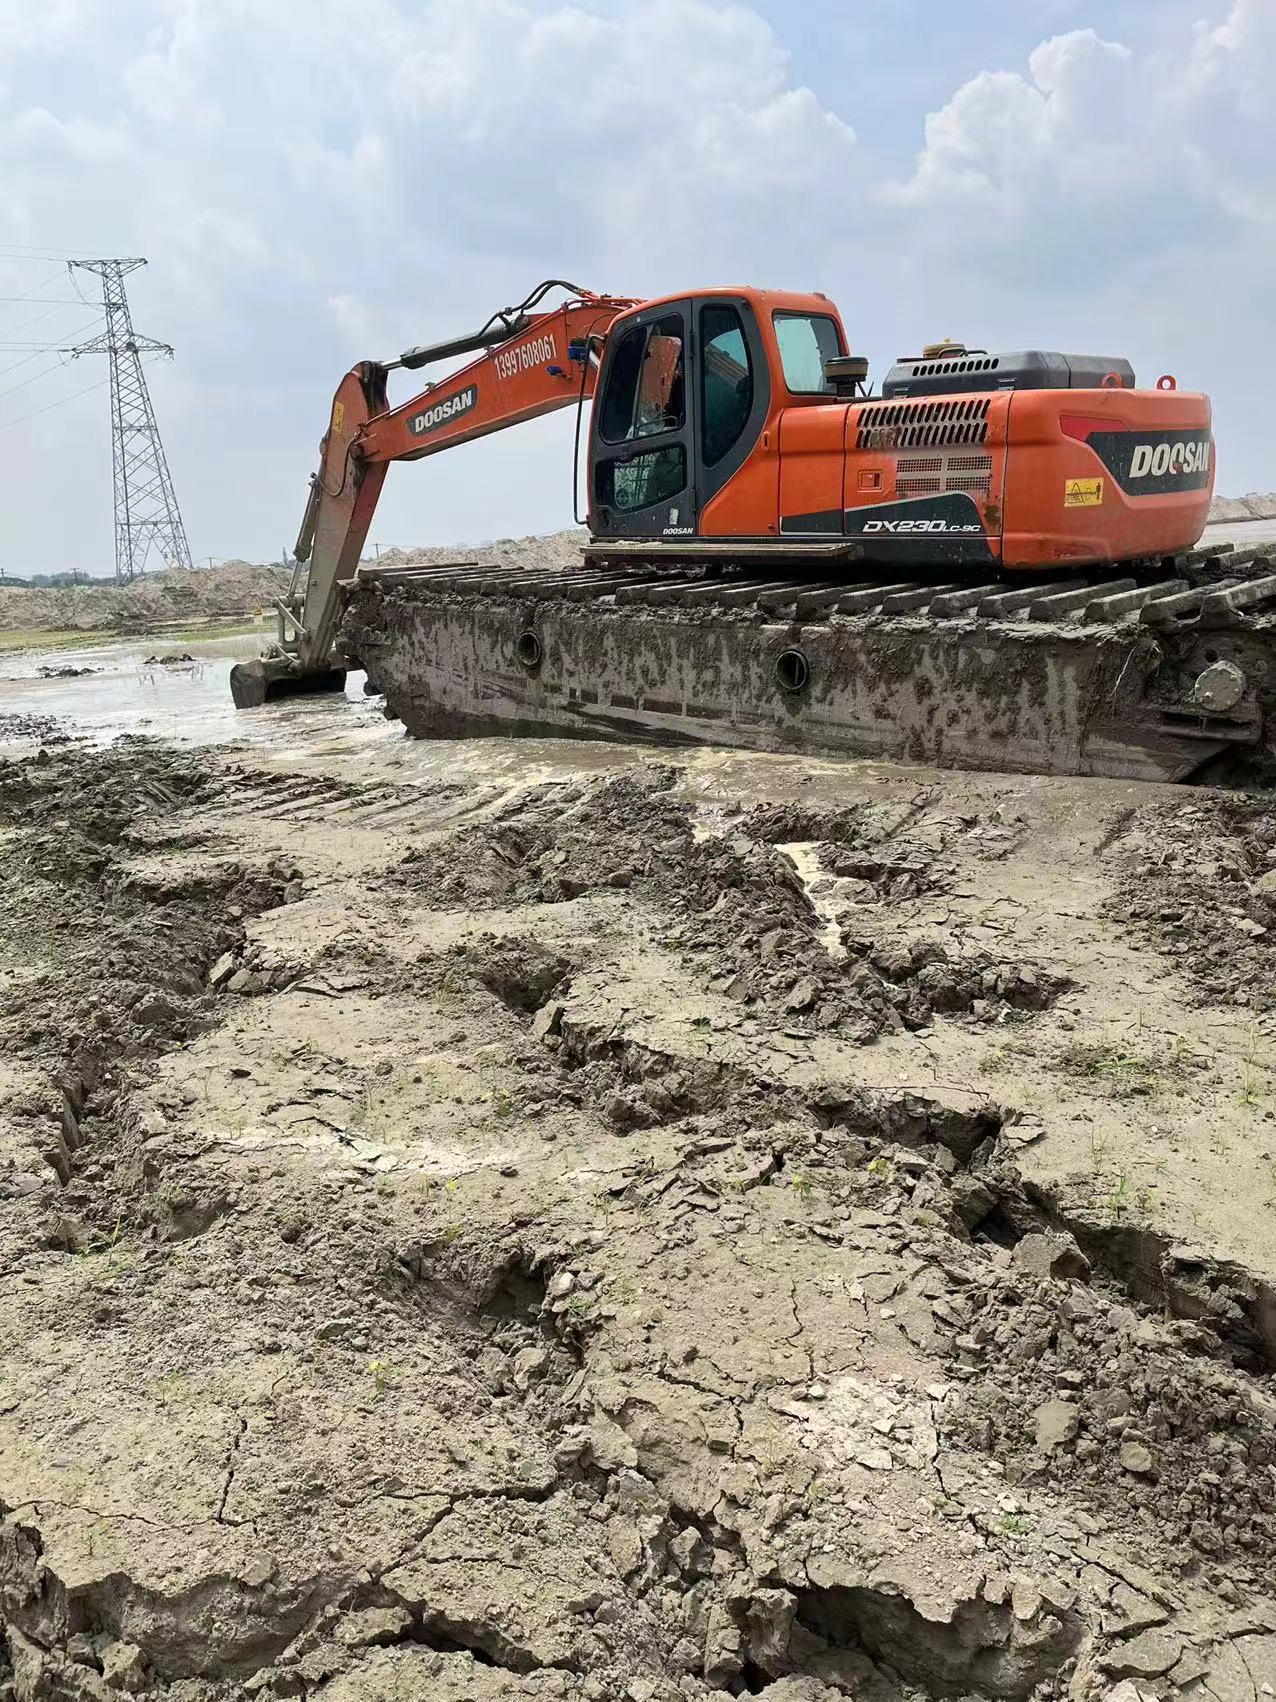 泸州水上清淤船同城有,水挖租赁一站式服务